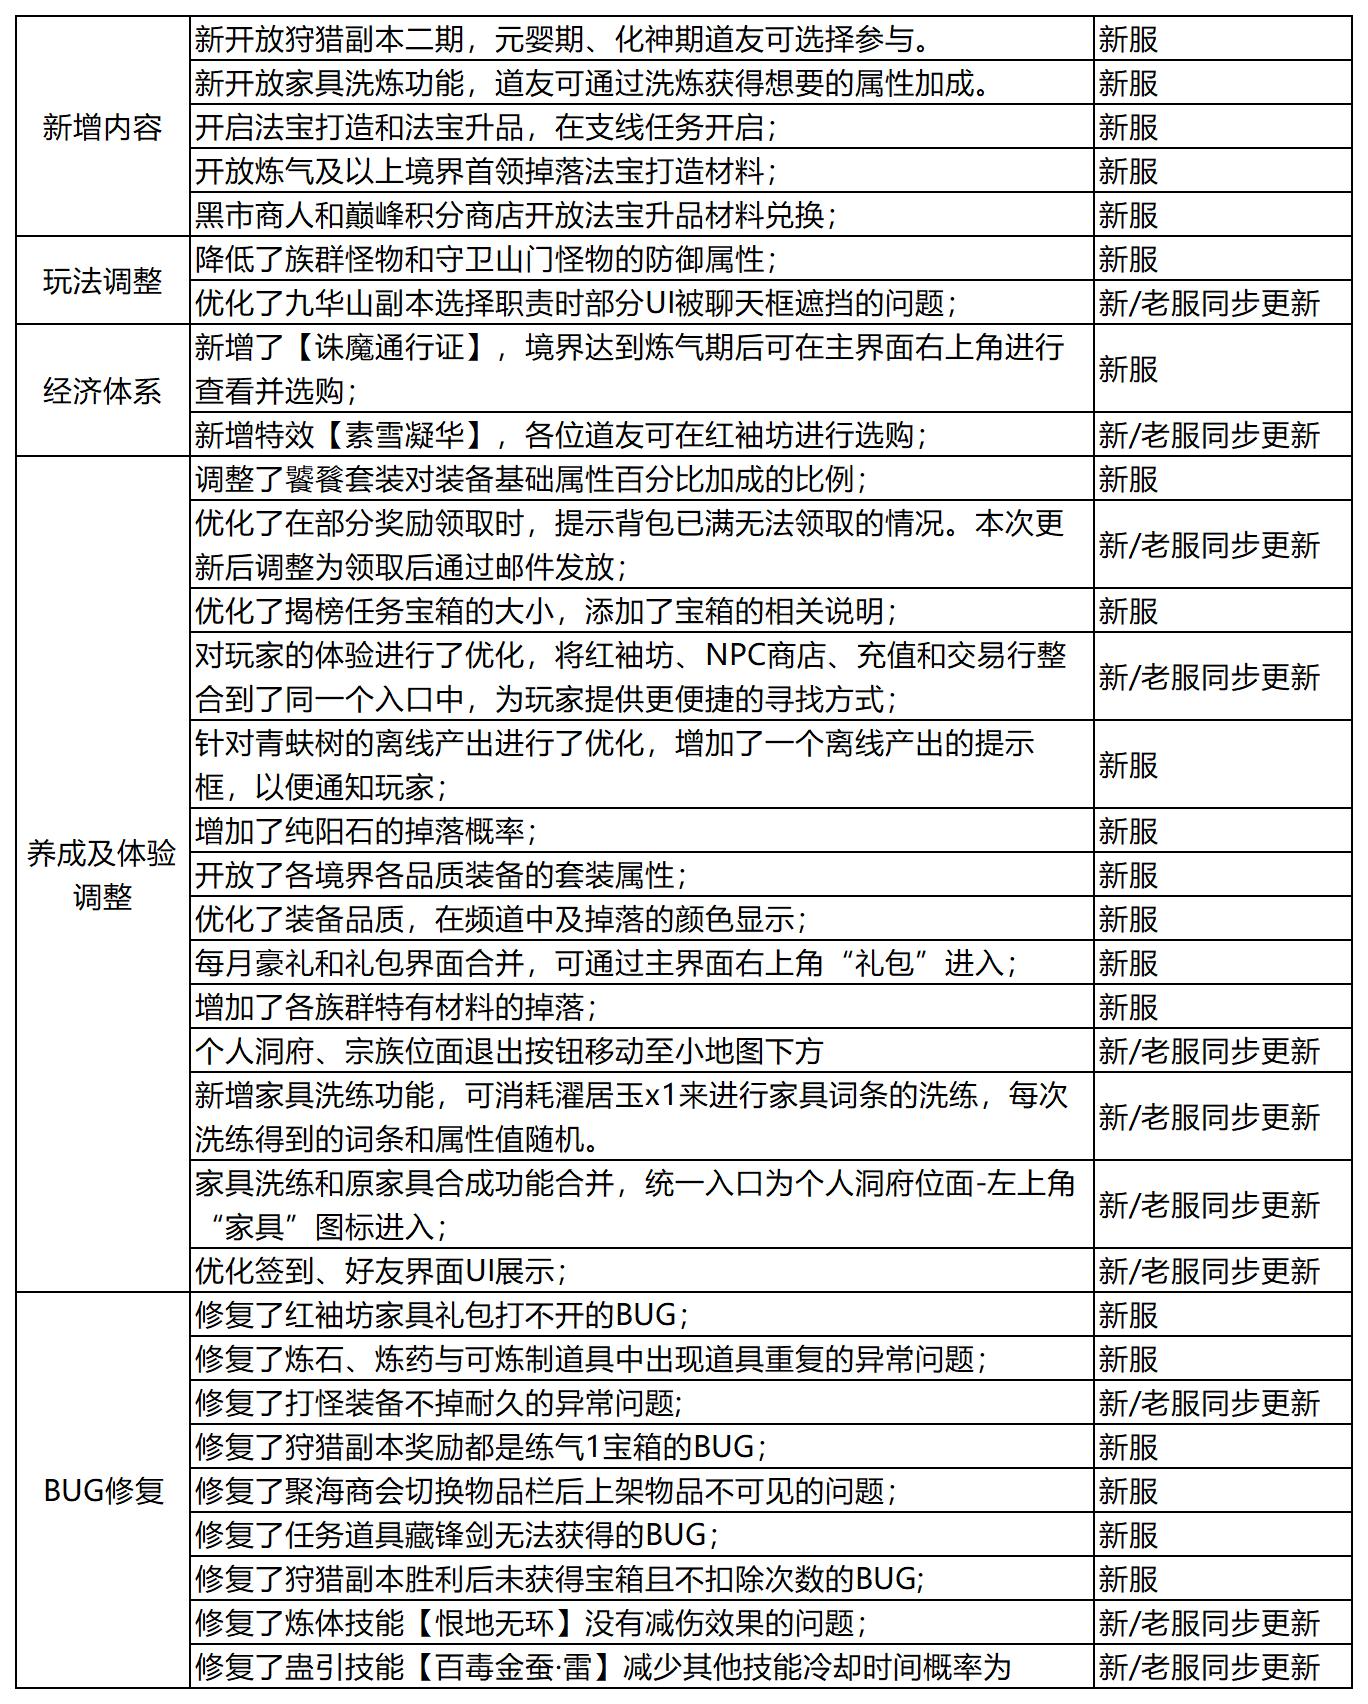 下一站江湖Ⅱ运营预热方案(5)(1)_Sheet4(1).jpg